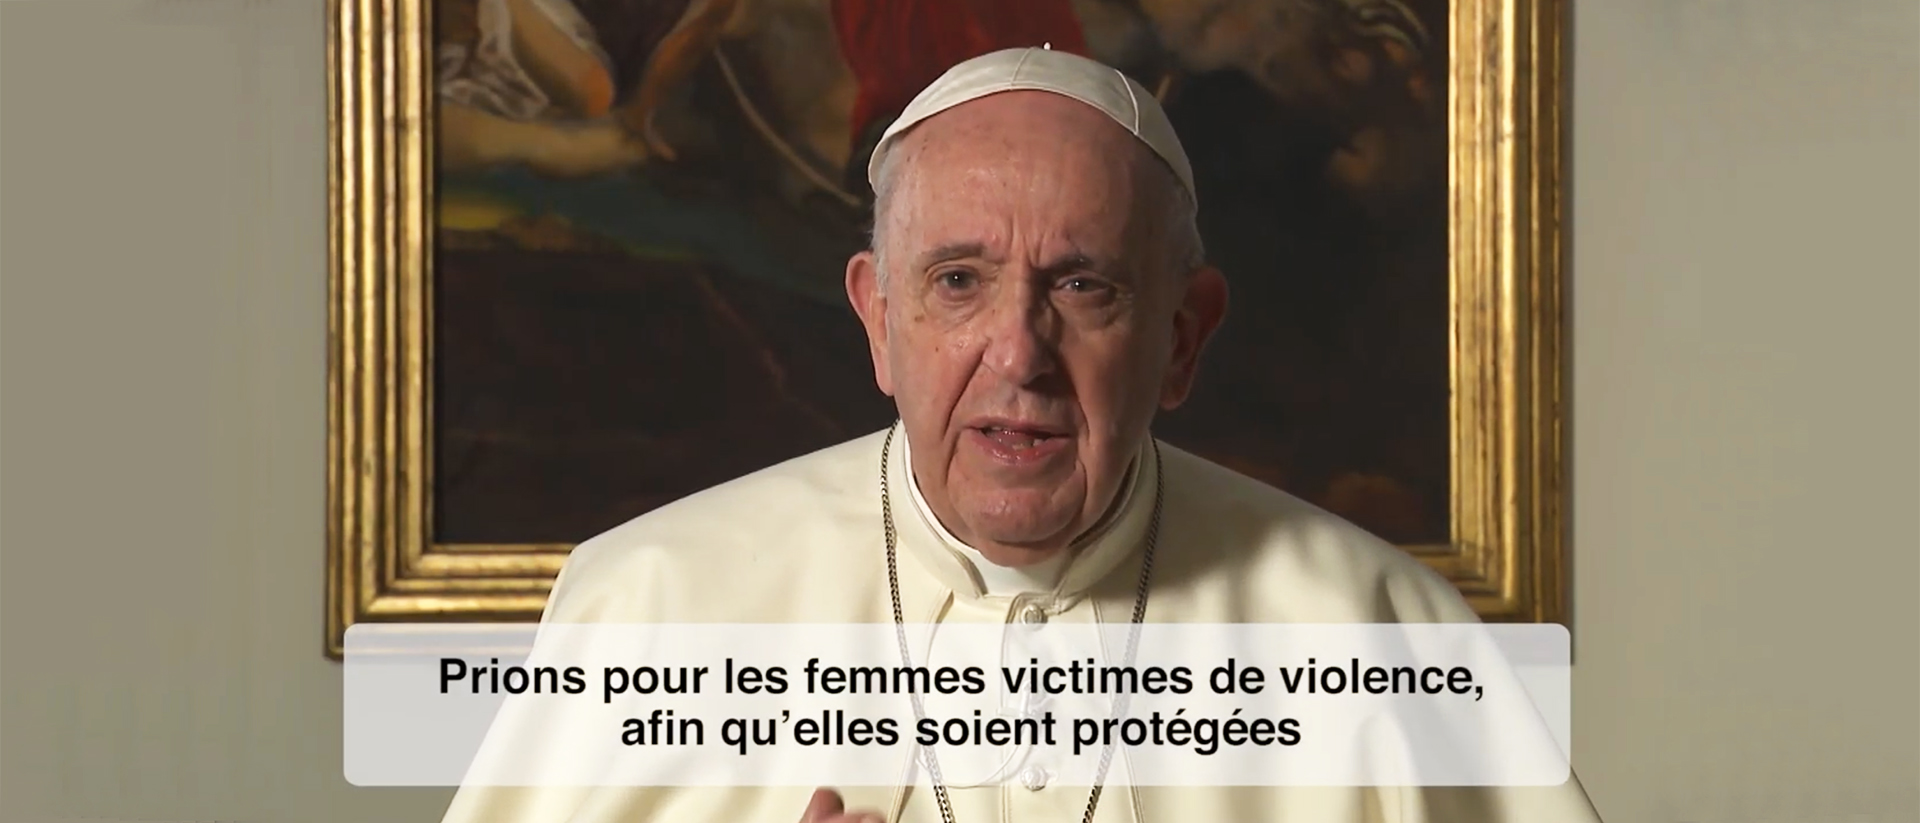 Le pape François a adressé un message vidéo pour dénoncer la violence faite aux femmes | capture d'écran / Youtube